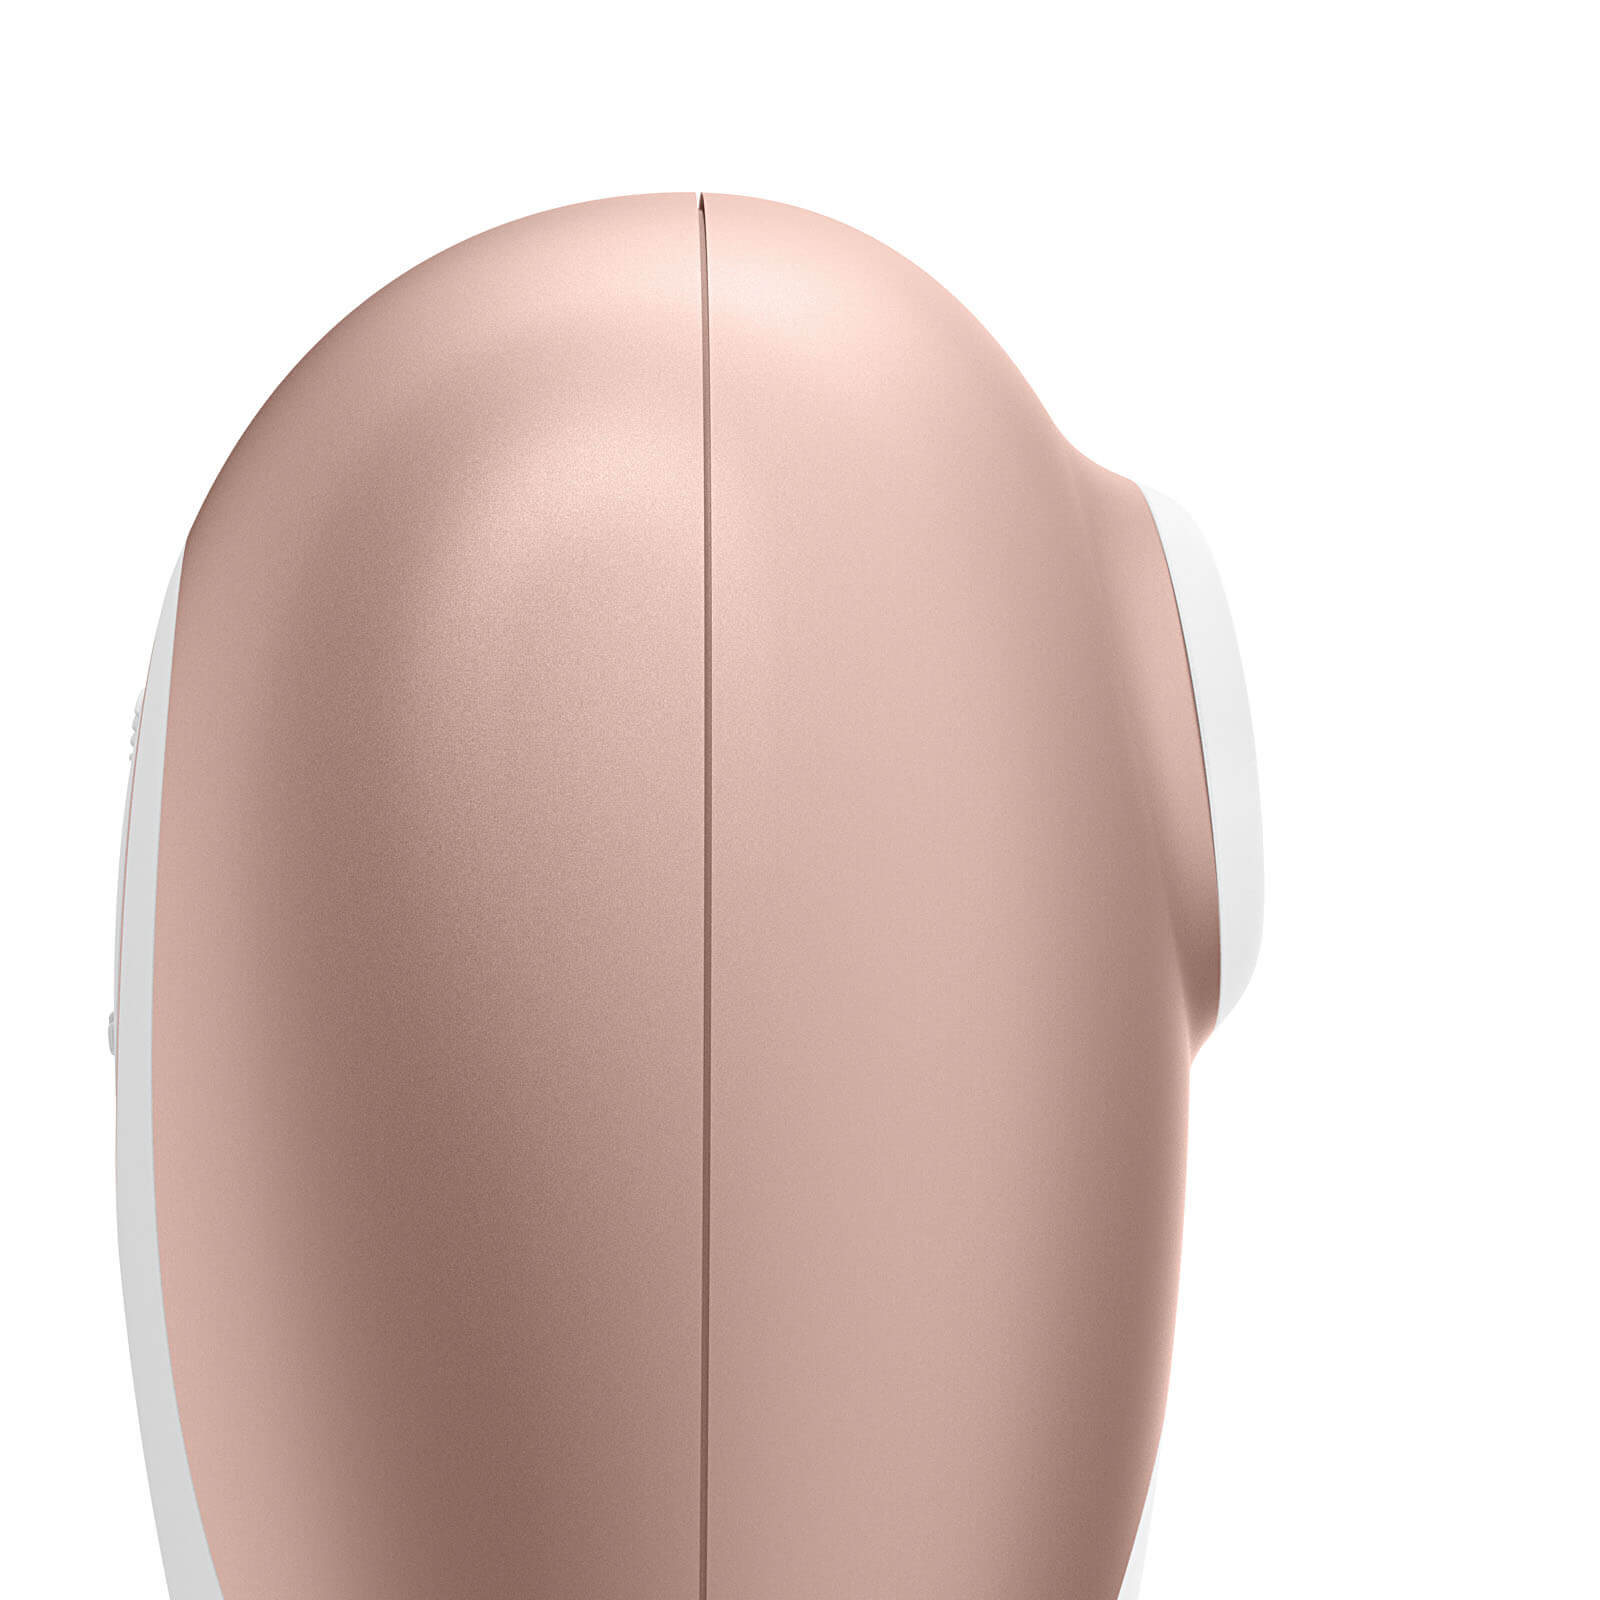 Satisfyer Deluxe, bezdotykový stimulátor klitorisu